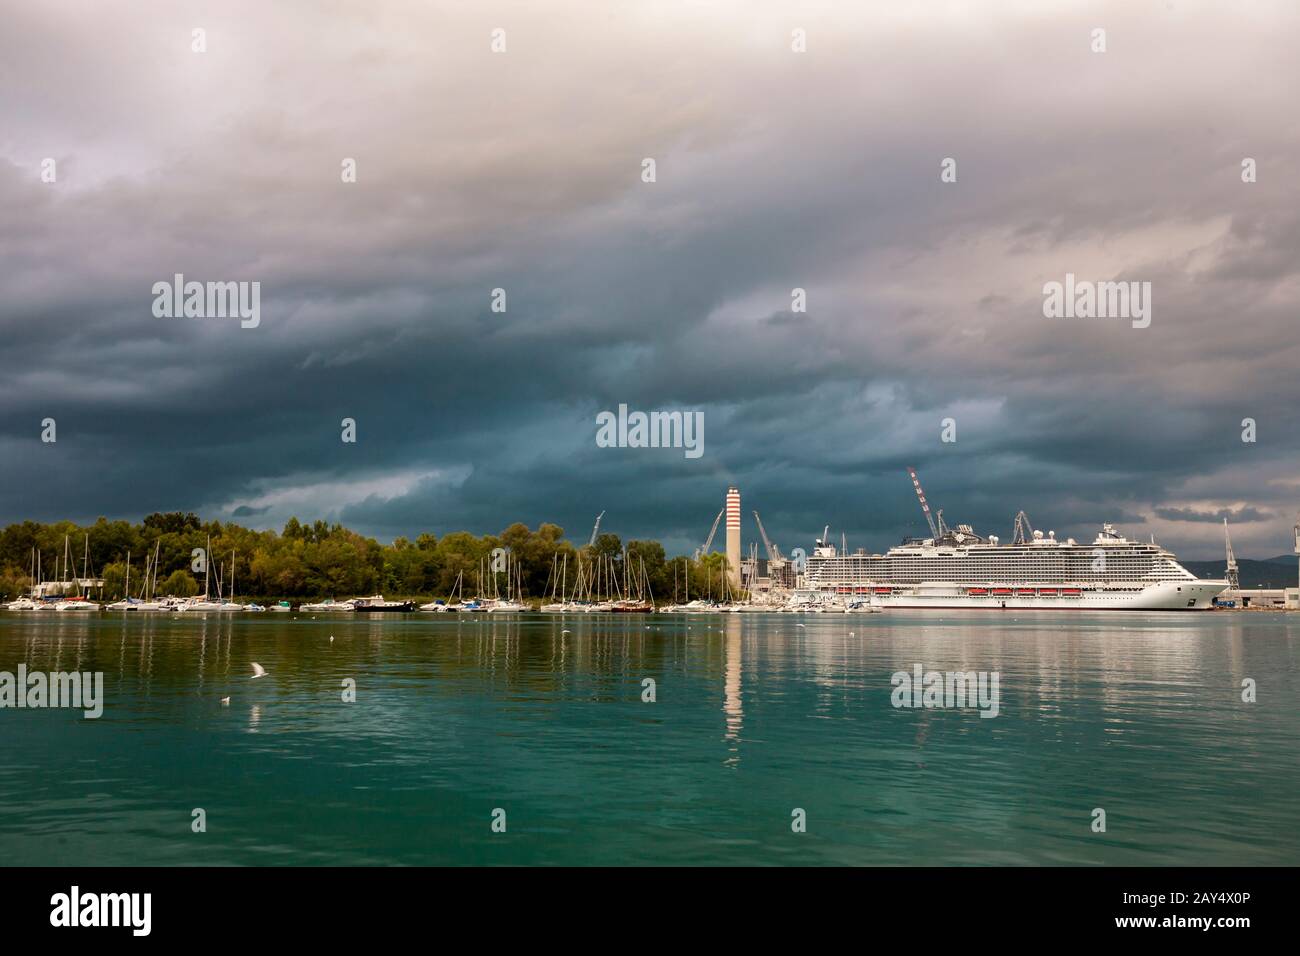 Stürmische Wolken über dem "SC Seaside" in den Cantiere Navale Fincantieri Docks, Monfalcone, Friaul-Julisch Venetien, Italien, zum endgültigen Abschluss vor dem Start Stockfoto